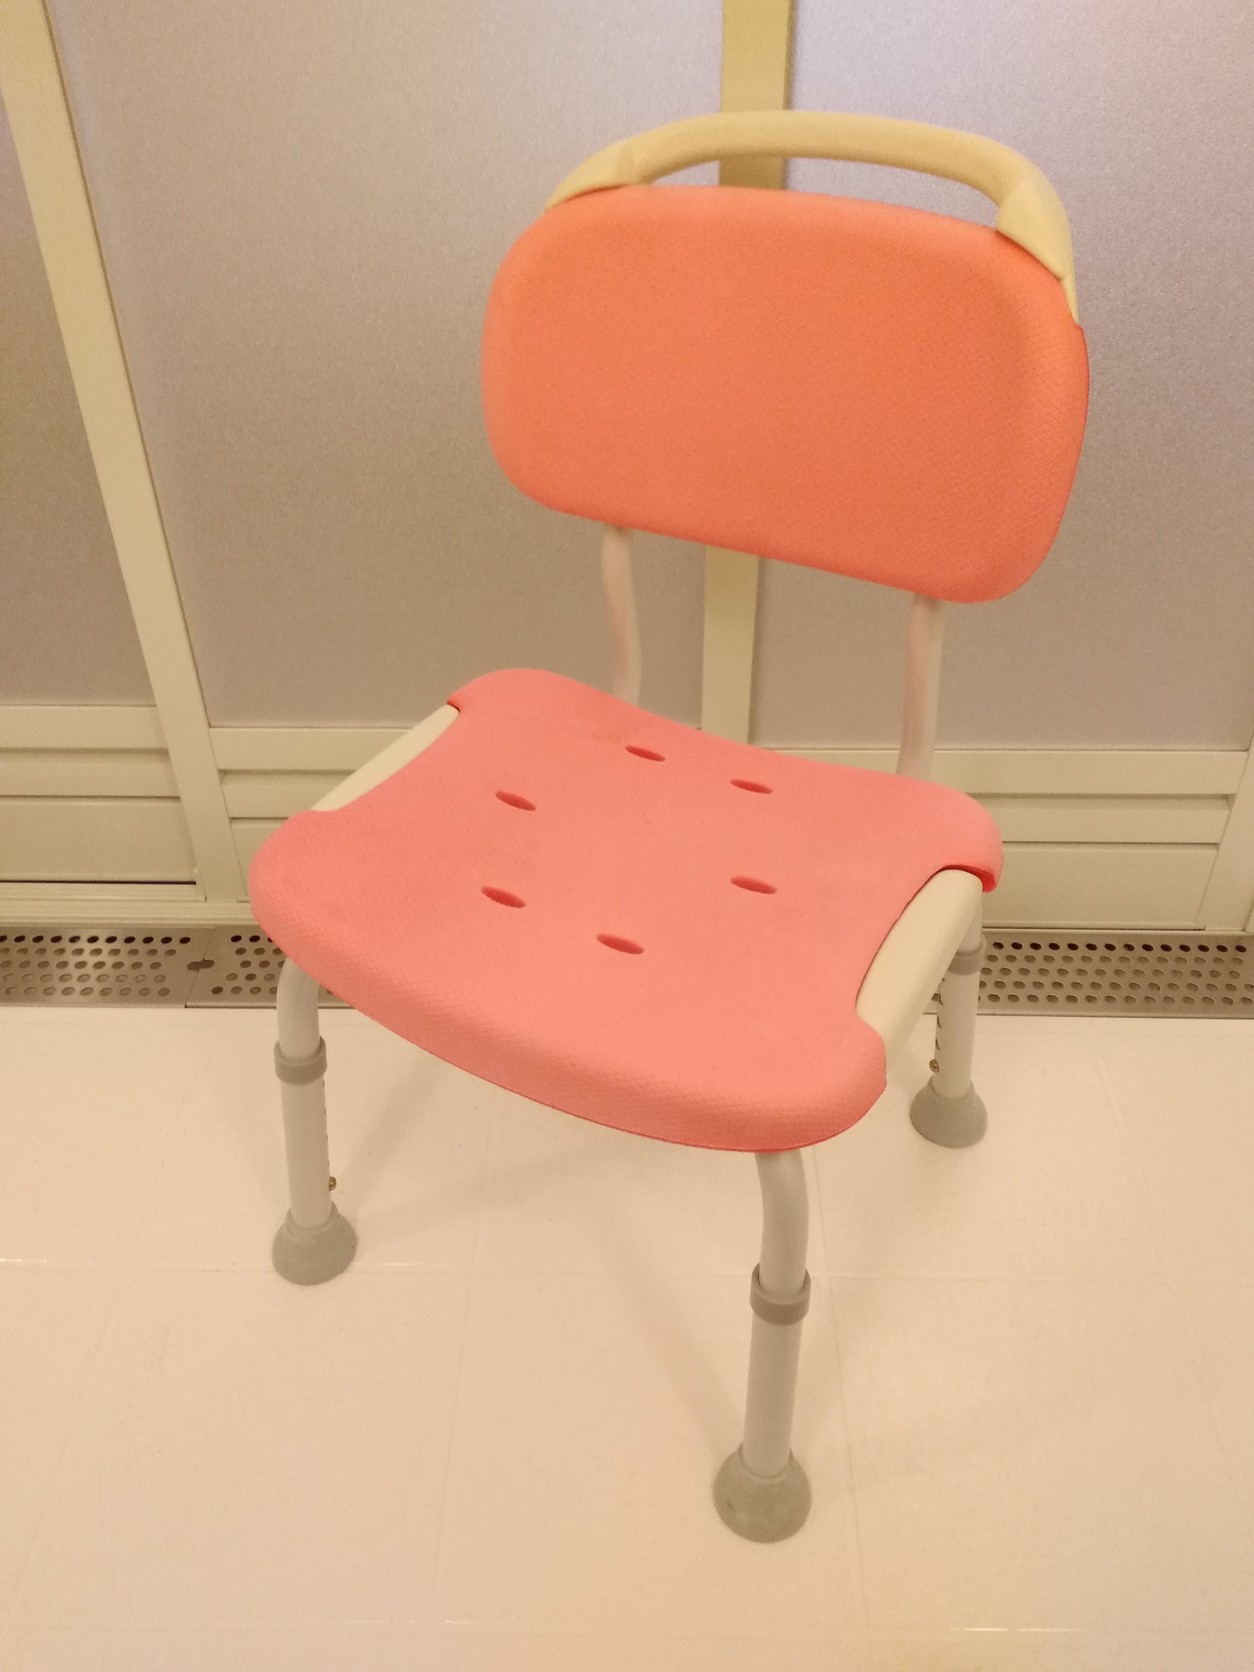 ユニバーサルツインルームのバスルームには、椅子がございます。